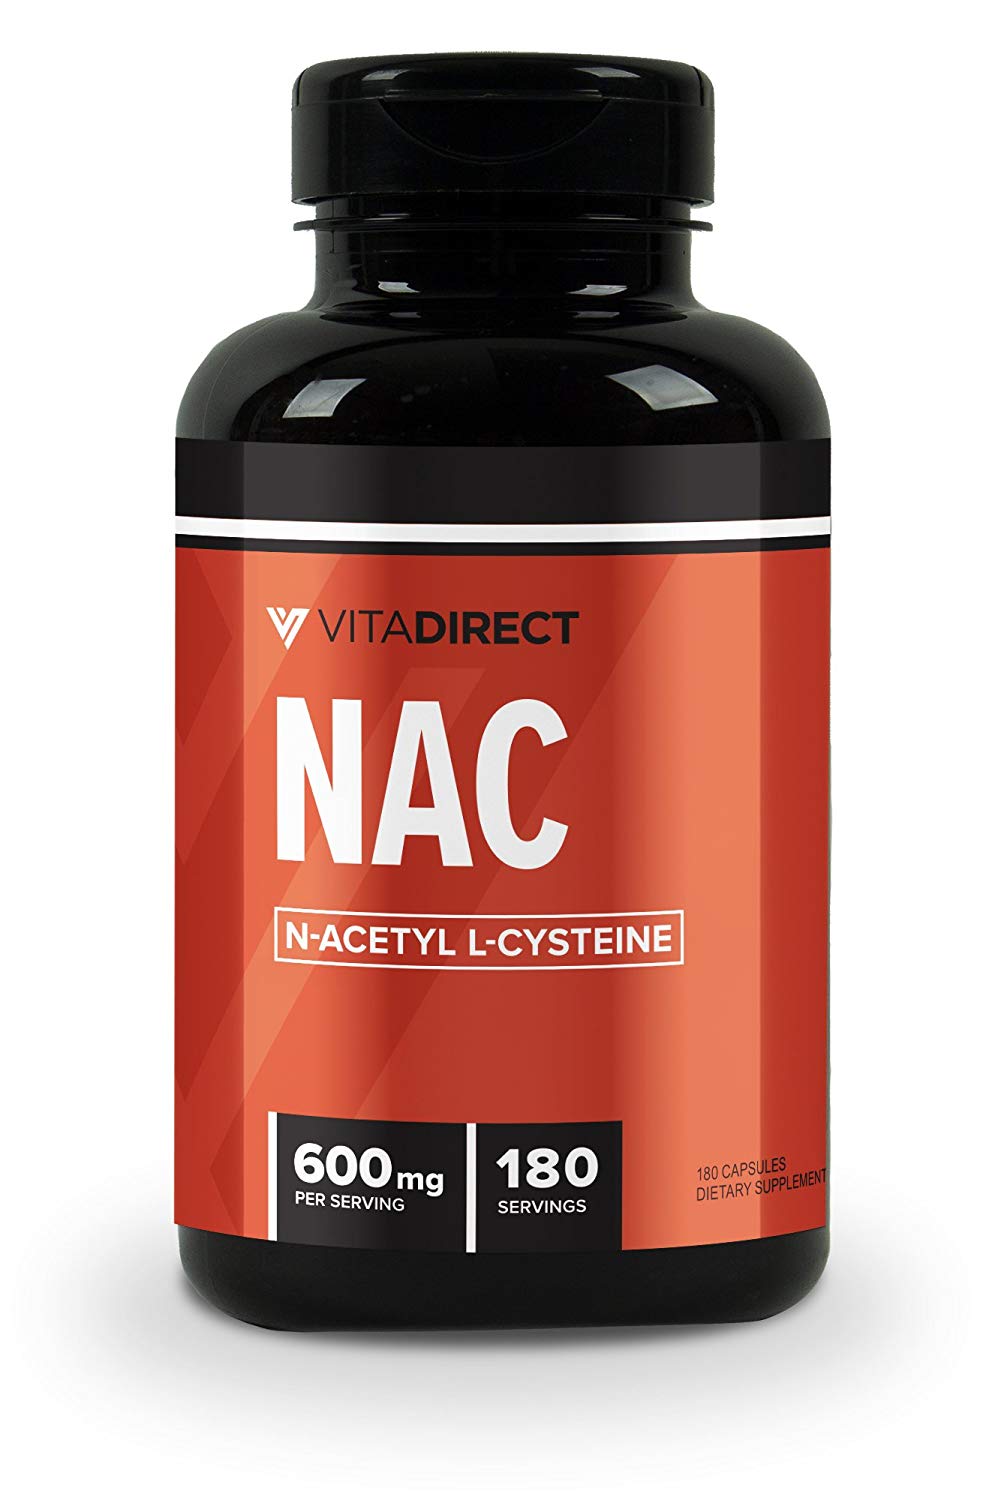 10 Best NAC Supplements